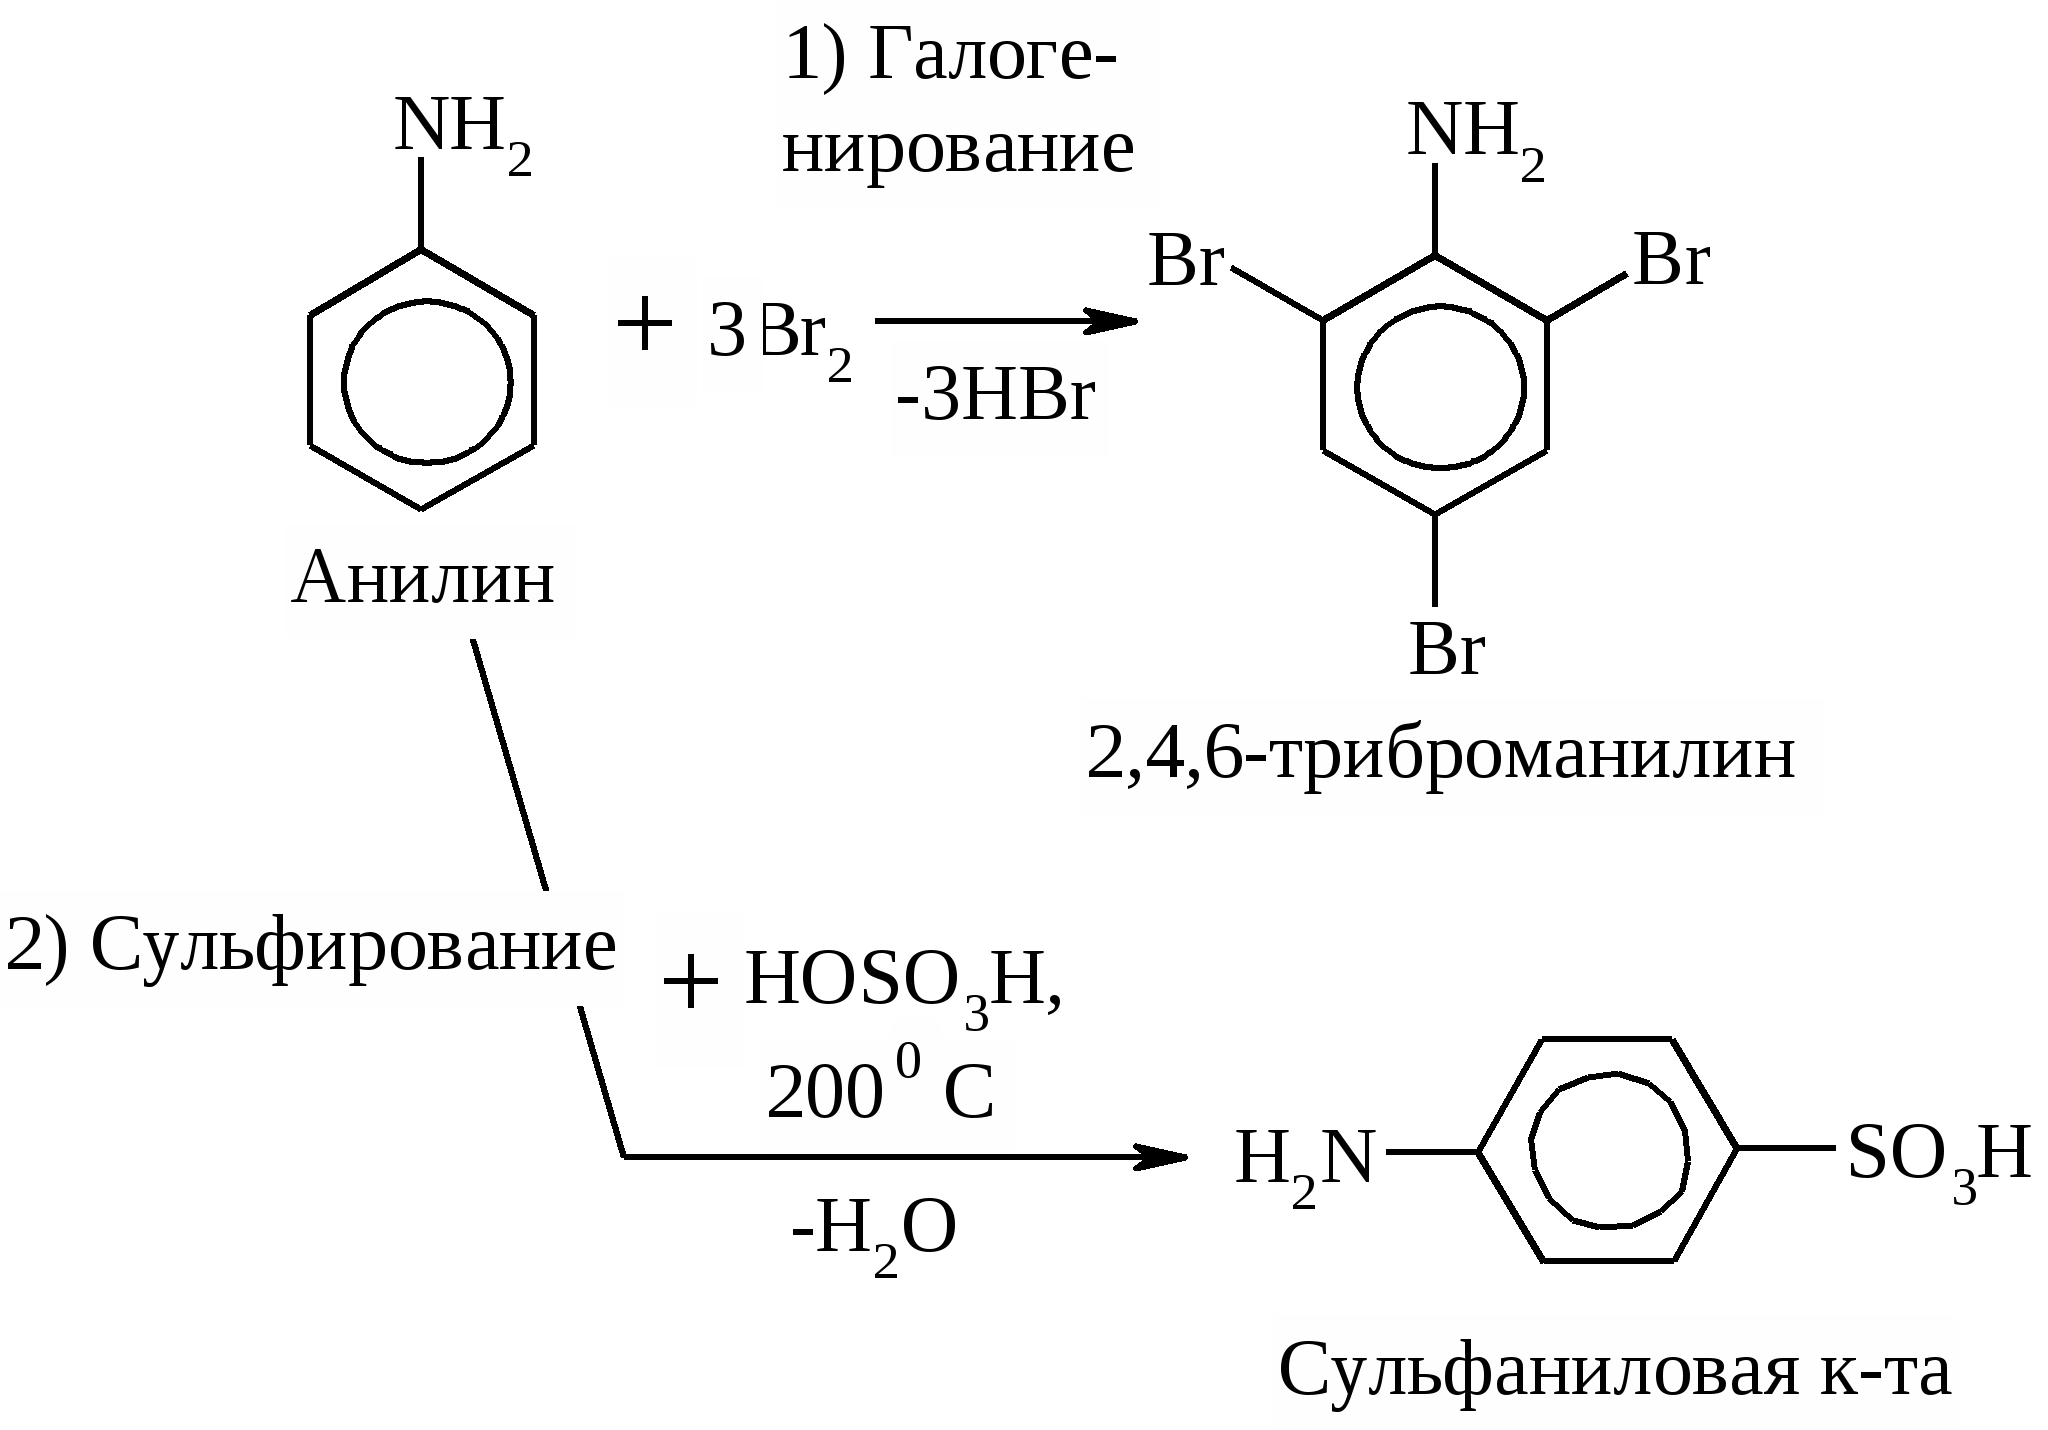 Сульфаниловая кислота из бензола. Анилин сульфаниловая кислота. Получение сульфаниловой кислоты из нитробензола. Анилин 2 4 6 триброманилин. Метанол бензол анилин и этиламин